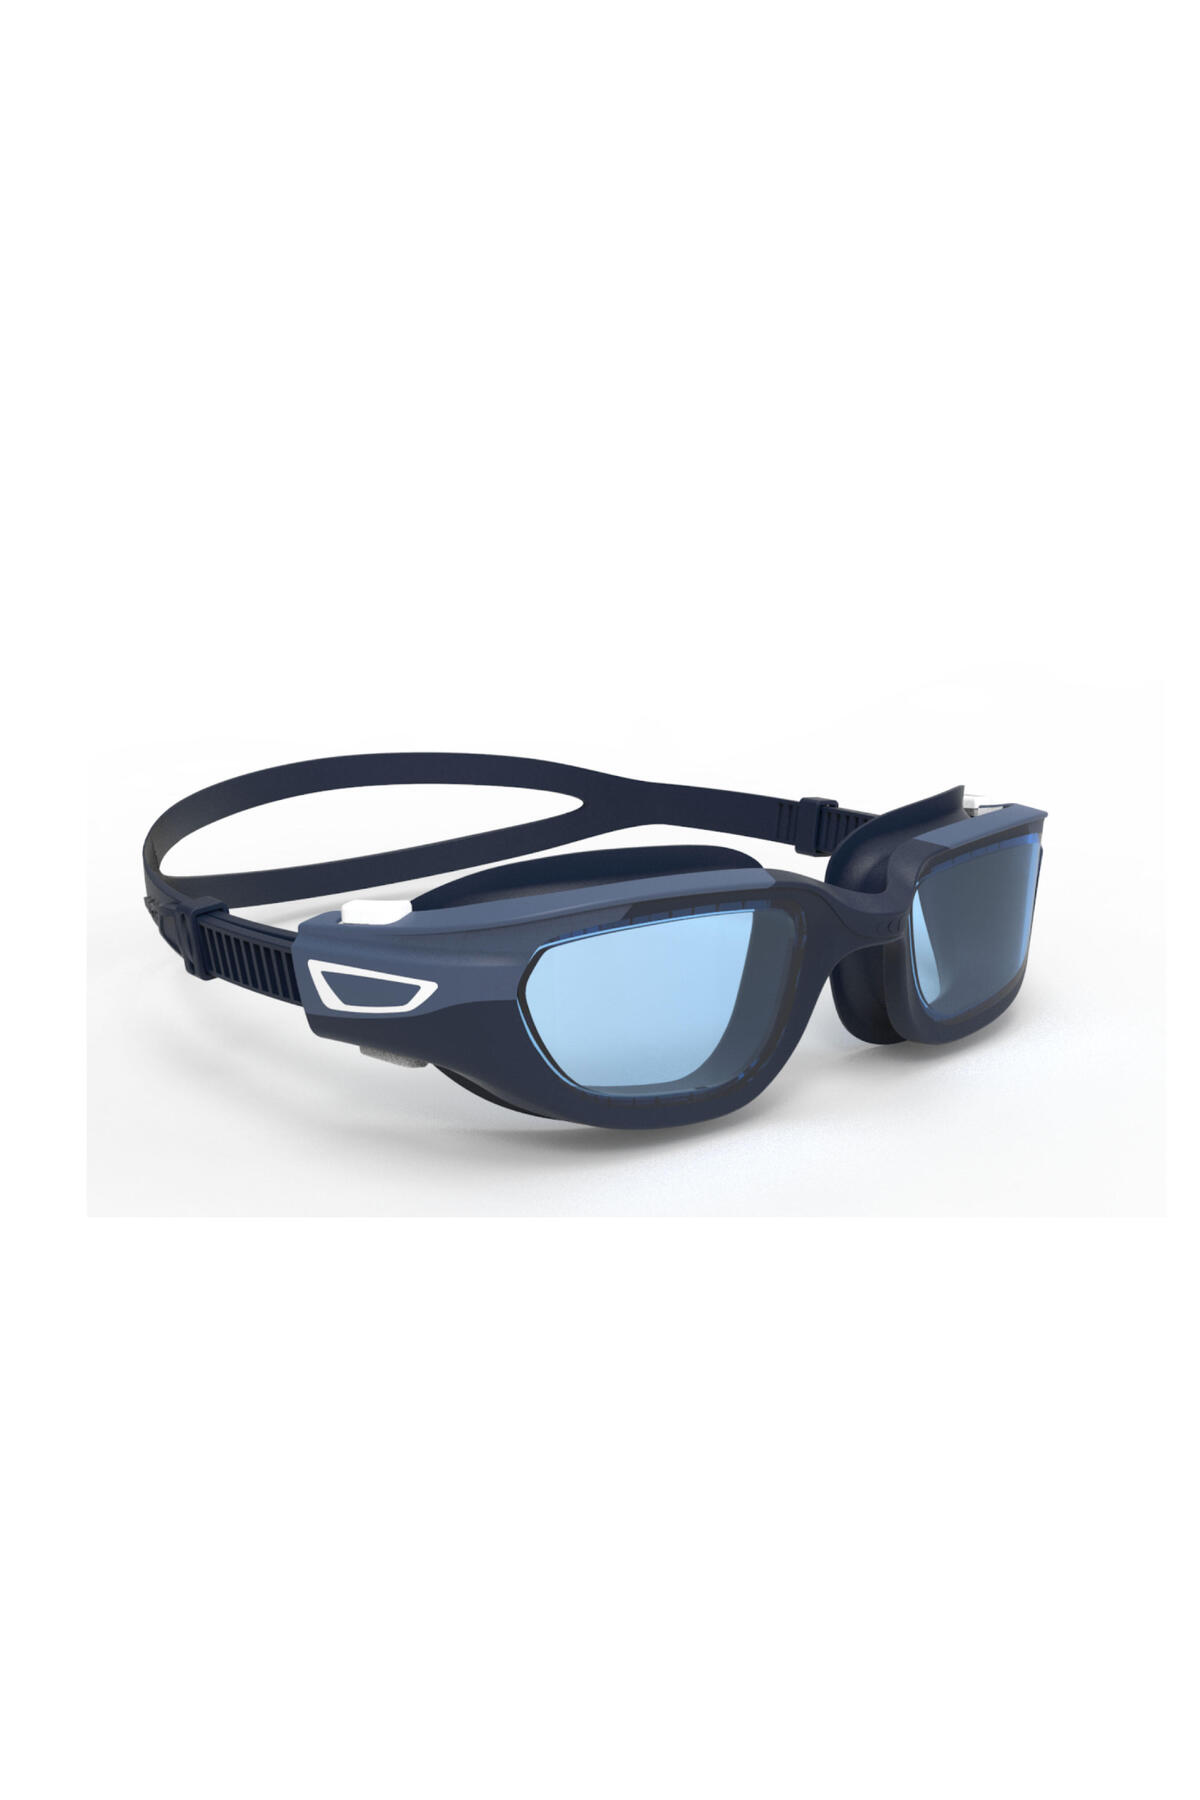 Decathlon عینک شنا - آبی / سفید رنگی سایز L اسپریت